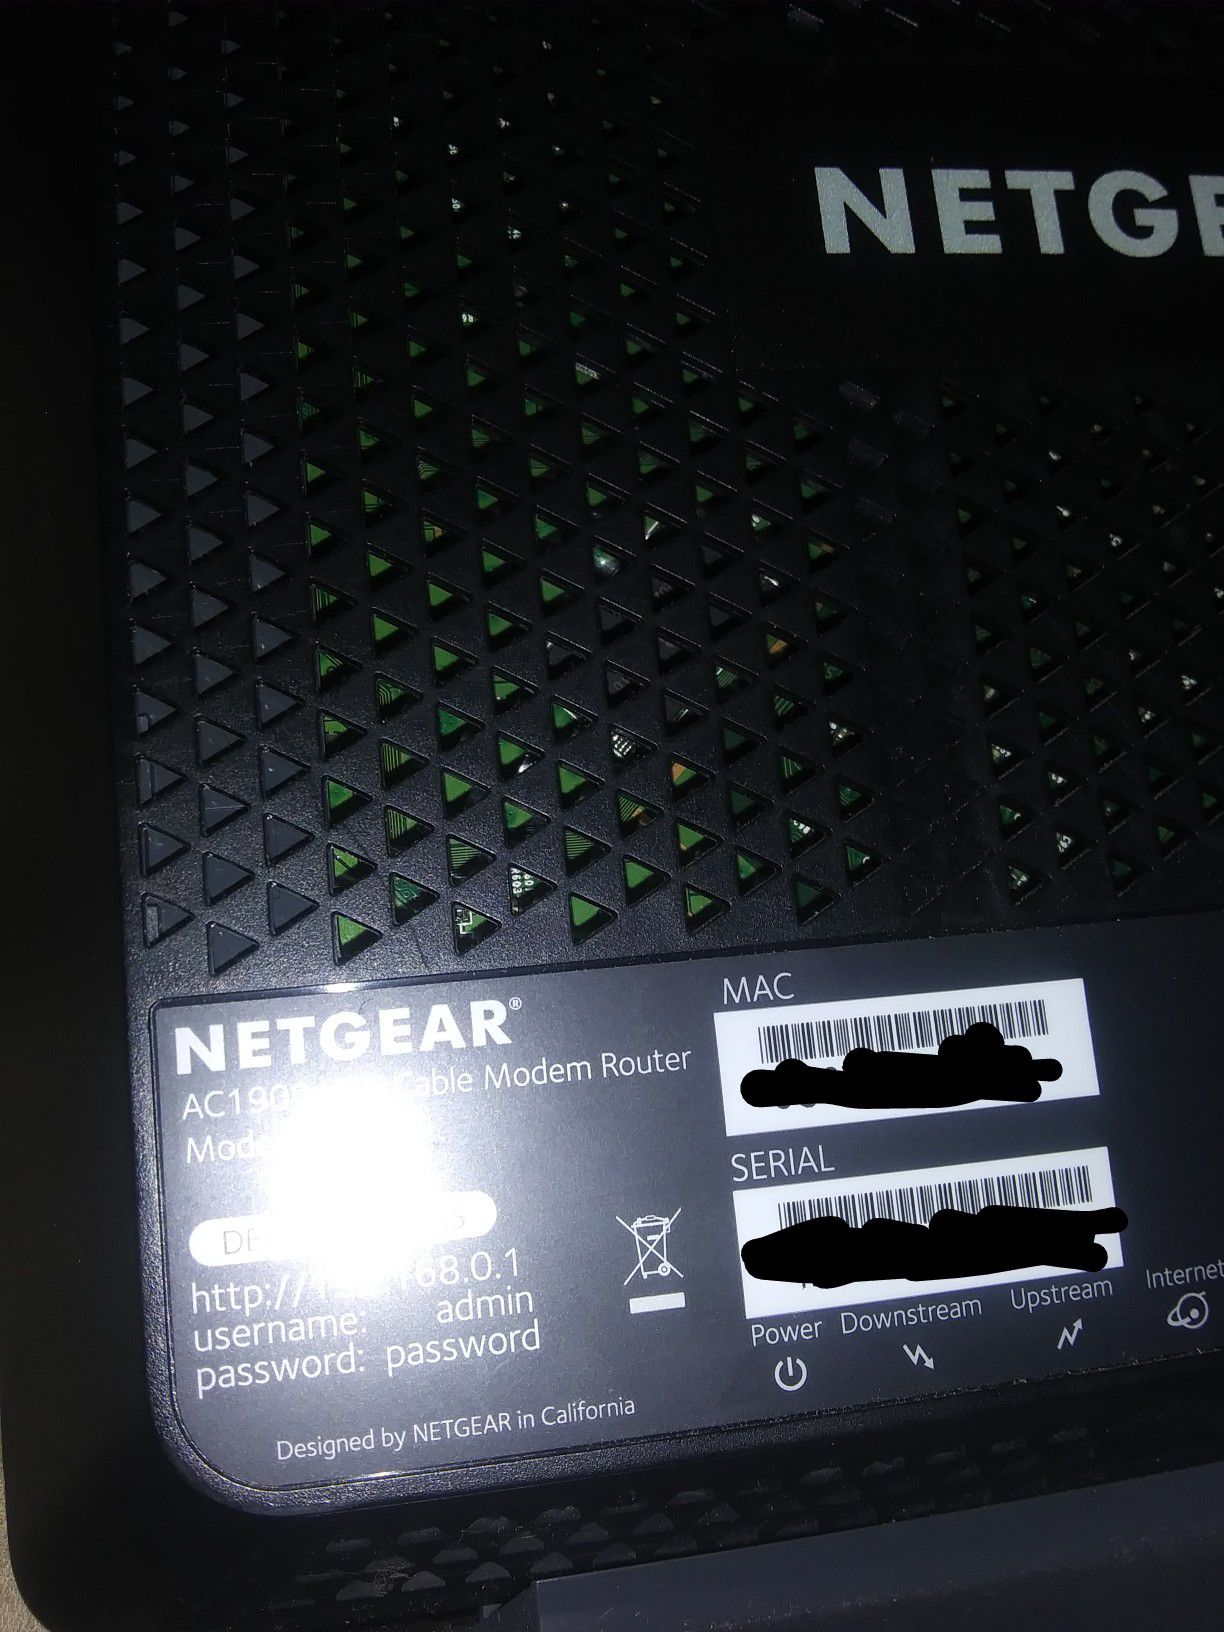 Netgear Nighthawk Router and Wi-Fi Modem combo